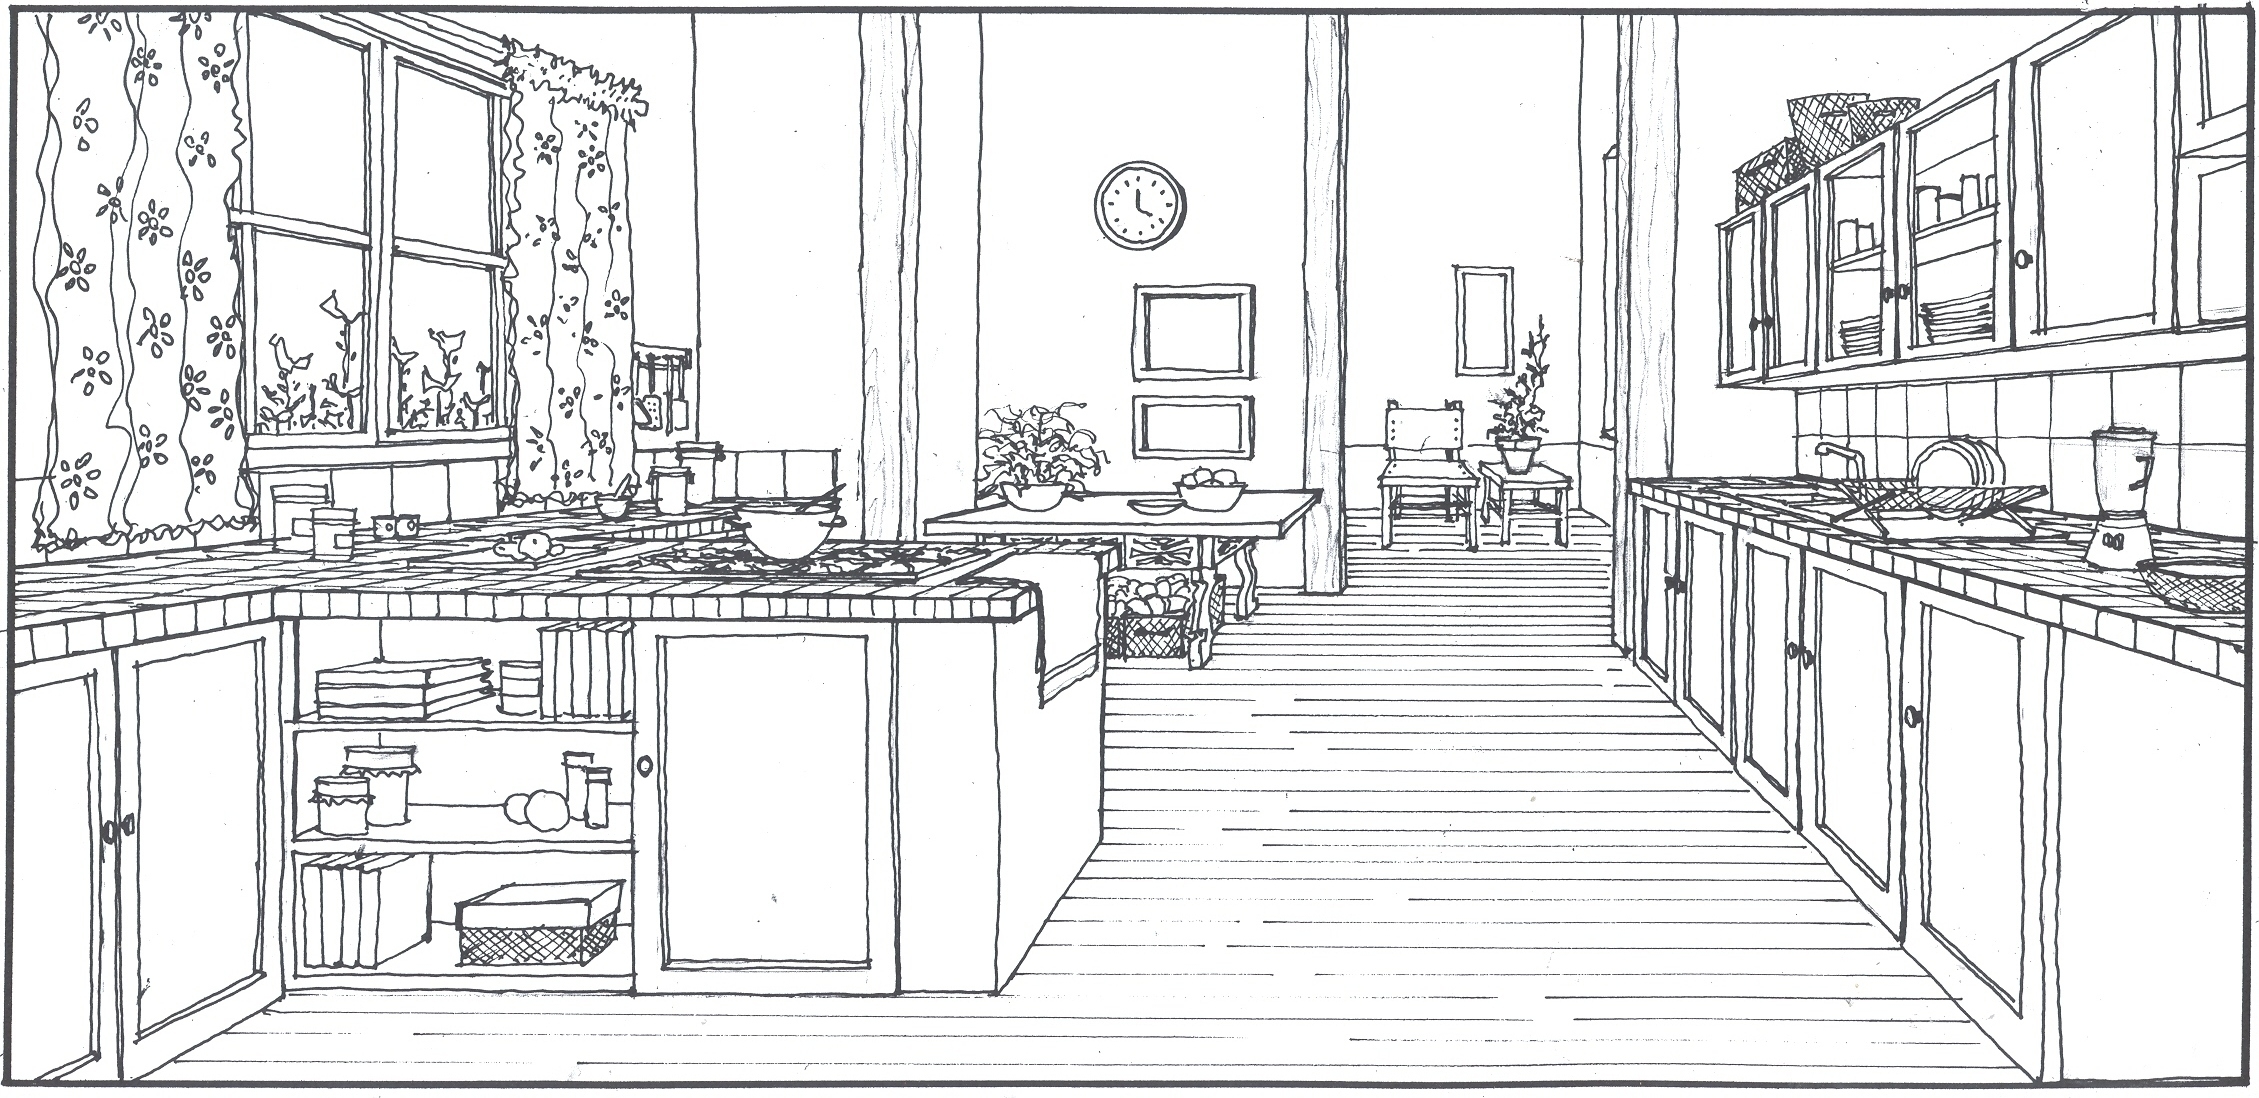 Kitchen Sketch by ArquitectCarDesigns on DeviantArt